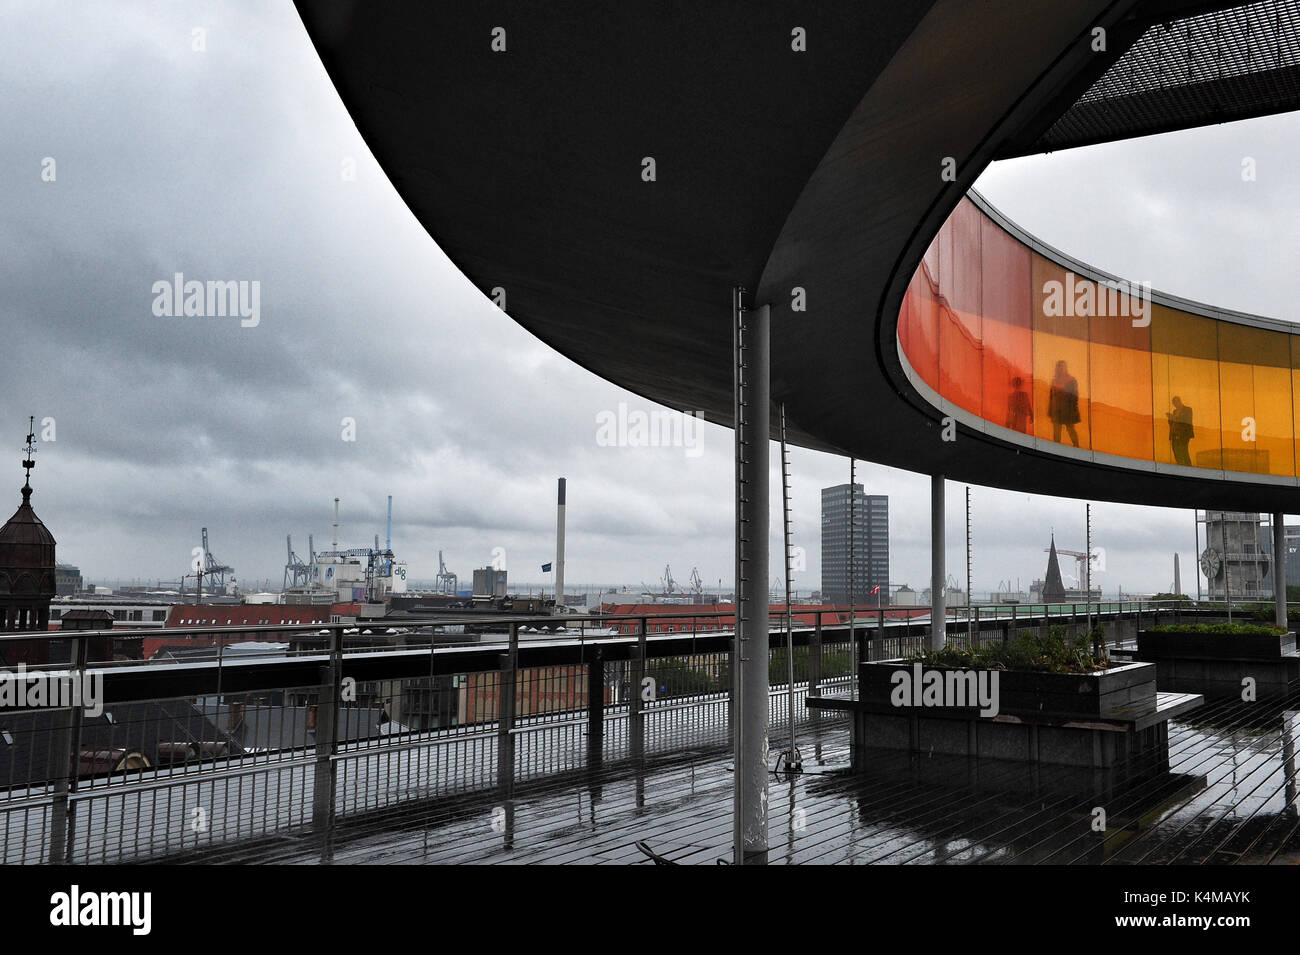 Votre 'Panorama' Arc-en-ciel, Olafur Eliasson spectaculaire de l'œuvre d'art sur le toit de la das Kunstmuseum à Aarhus, Danemark Banque D'Images